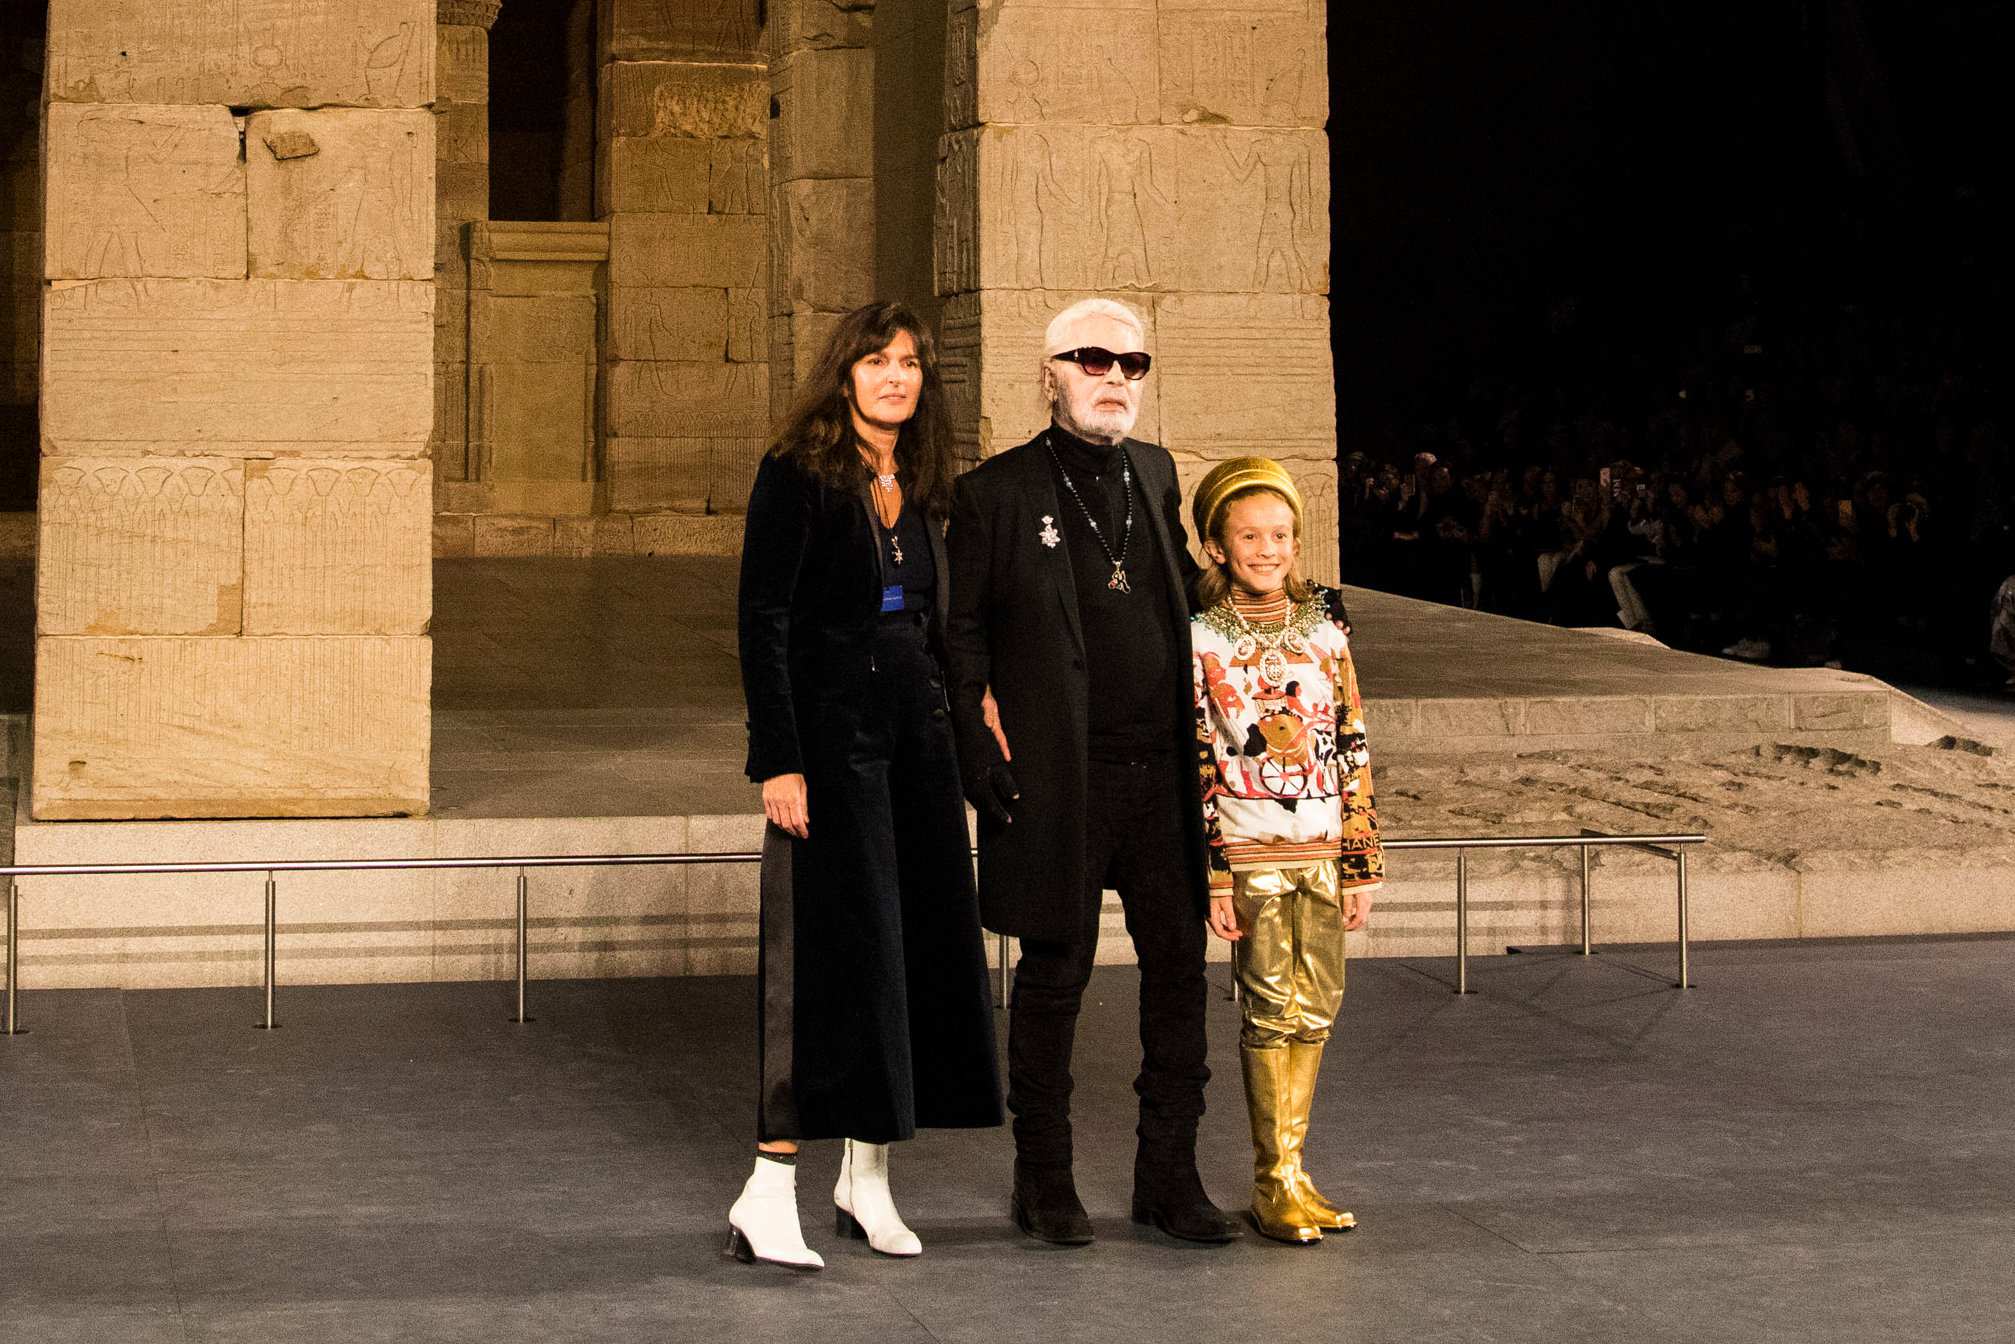 Cánh tay mặt” của Karl Lagerfeld, NTK Virginie Viard sẽ kế nhiệm và viết  nên chương mới của Chanel  | Thời Trang, sáng tạo và  kinh doanh